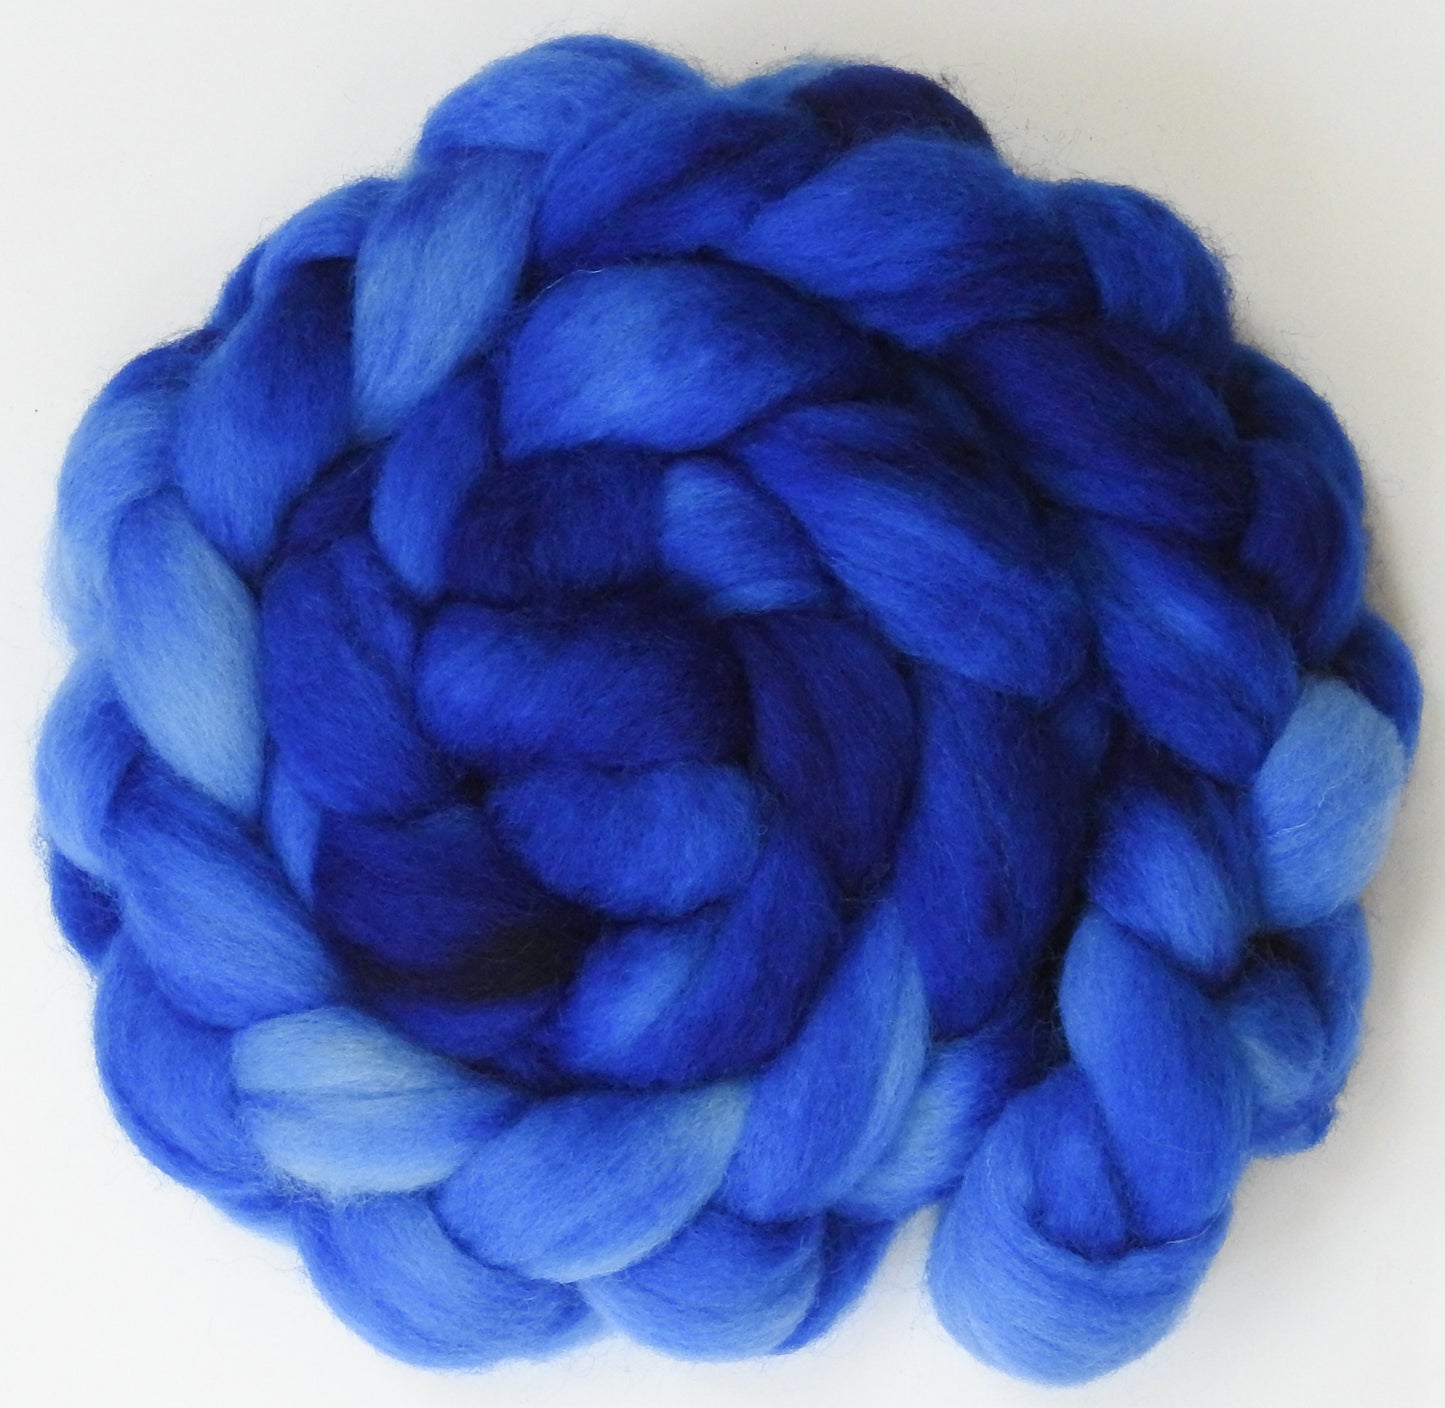 Blue Ribbon - Batt in a Braid #43 -(5.6 oz.) - Dorset/Cheviot/Kid Mohair (60/20/20)